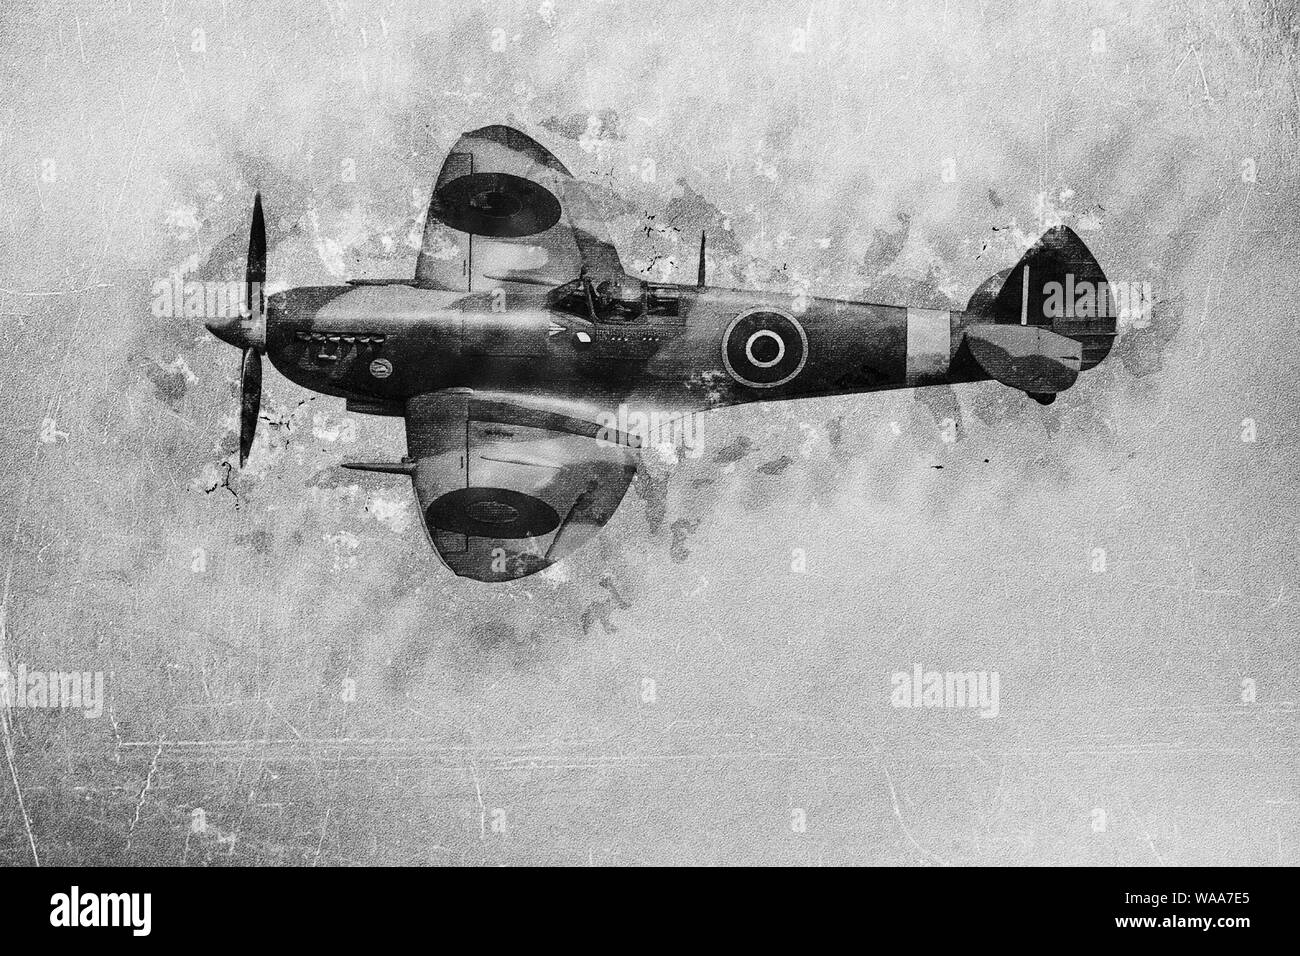 Amélioration de l'image numérique d'un Supermarine Spitfire de la Royal Air Force en vol Banque D'Images